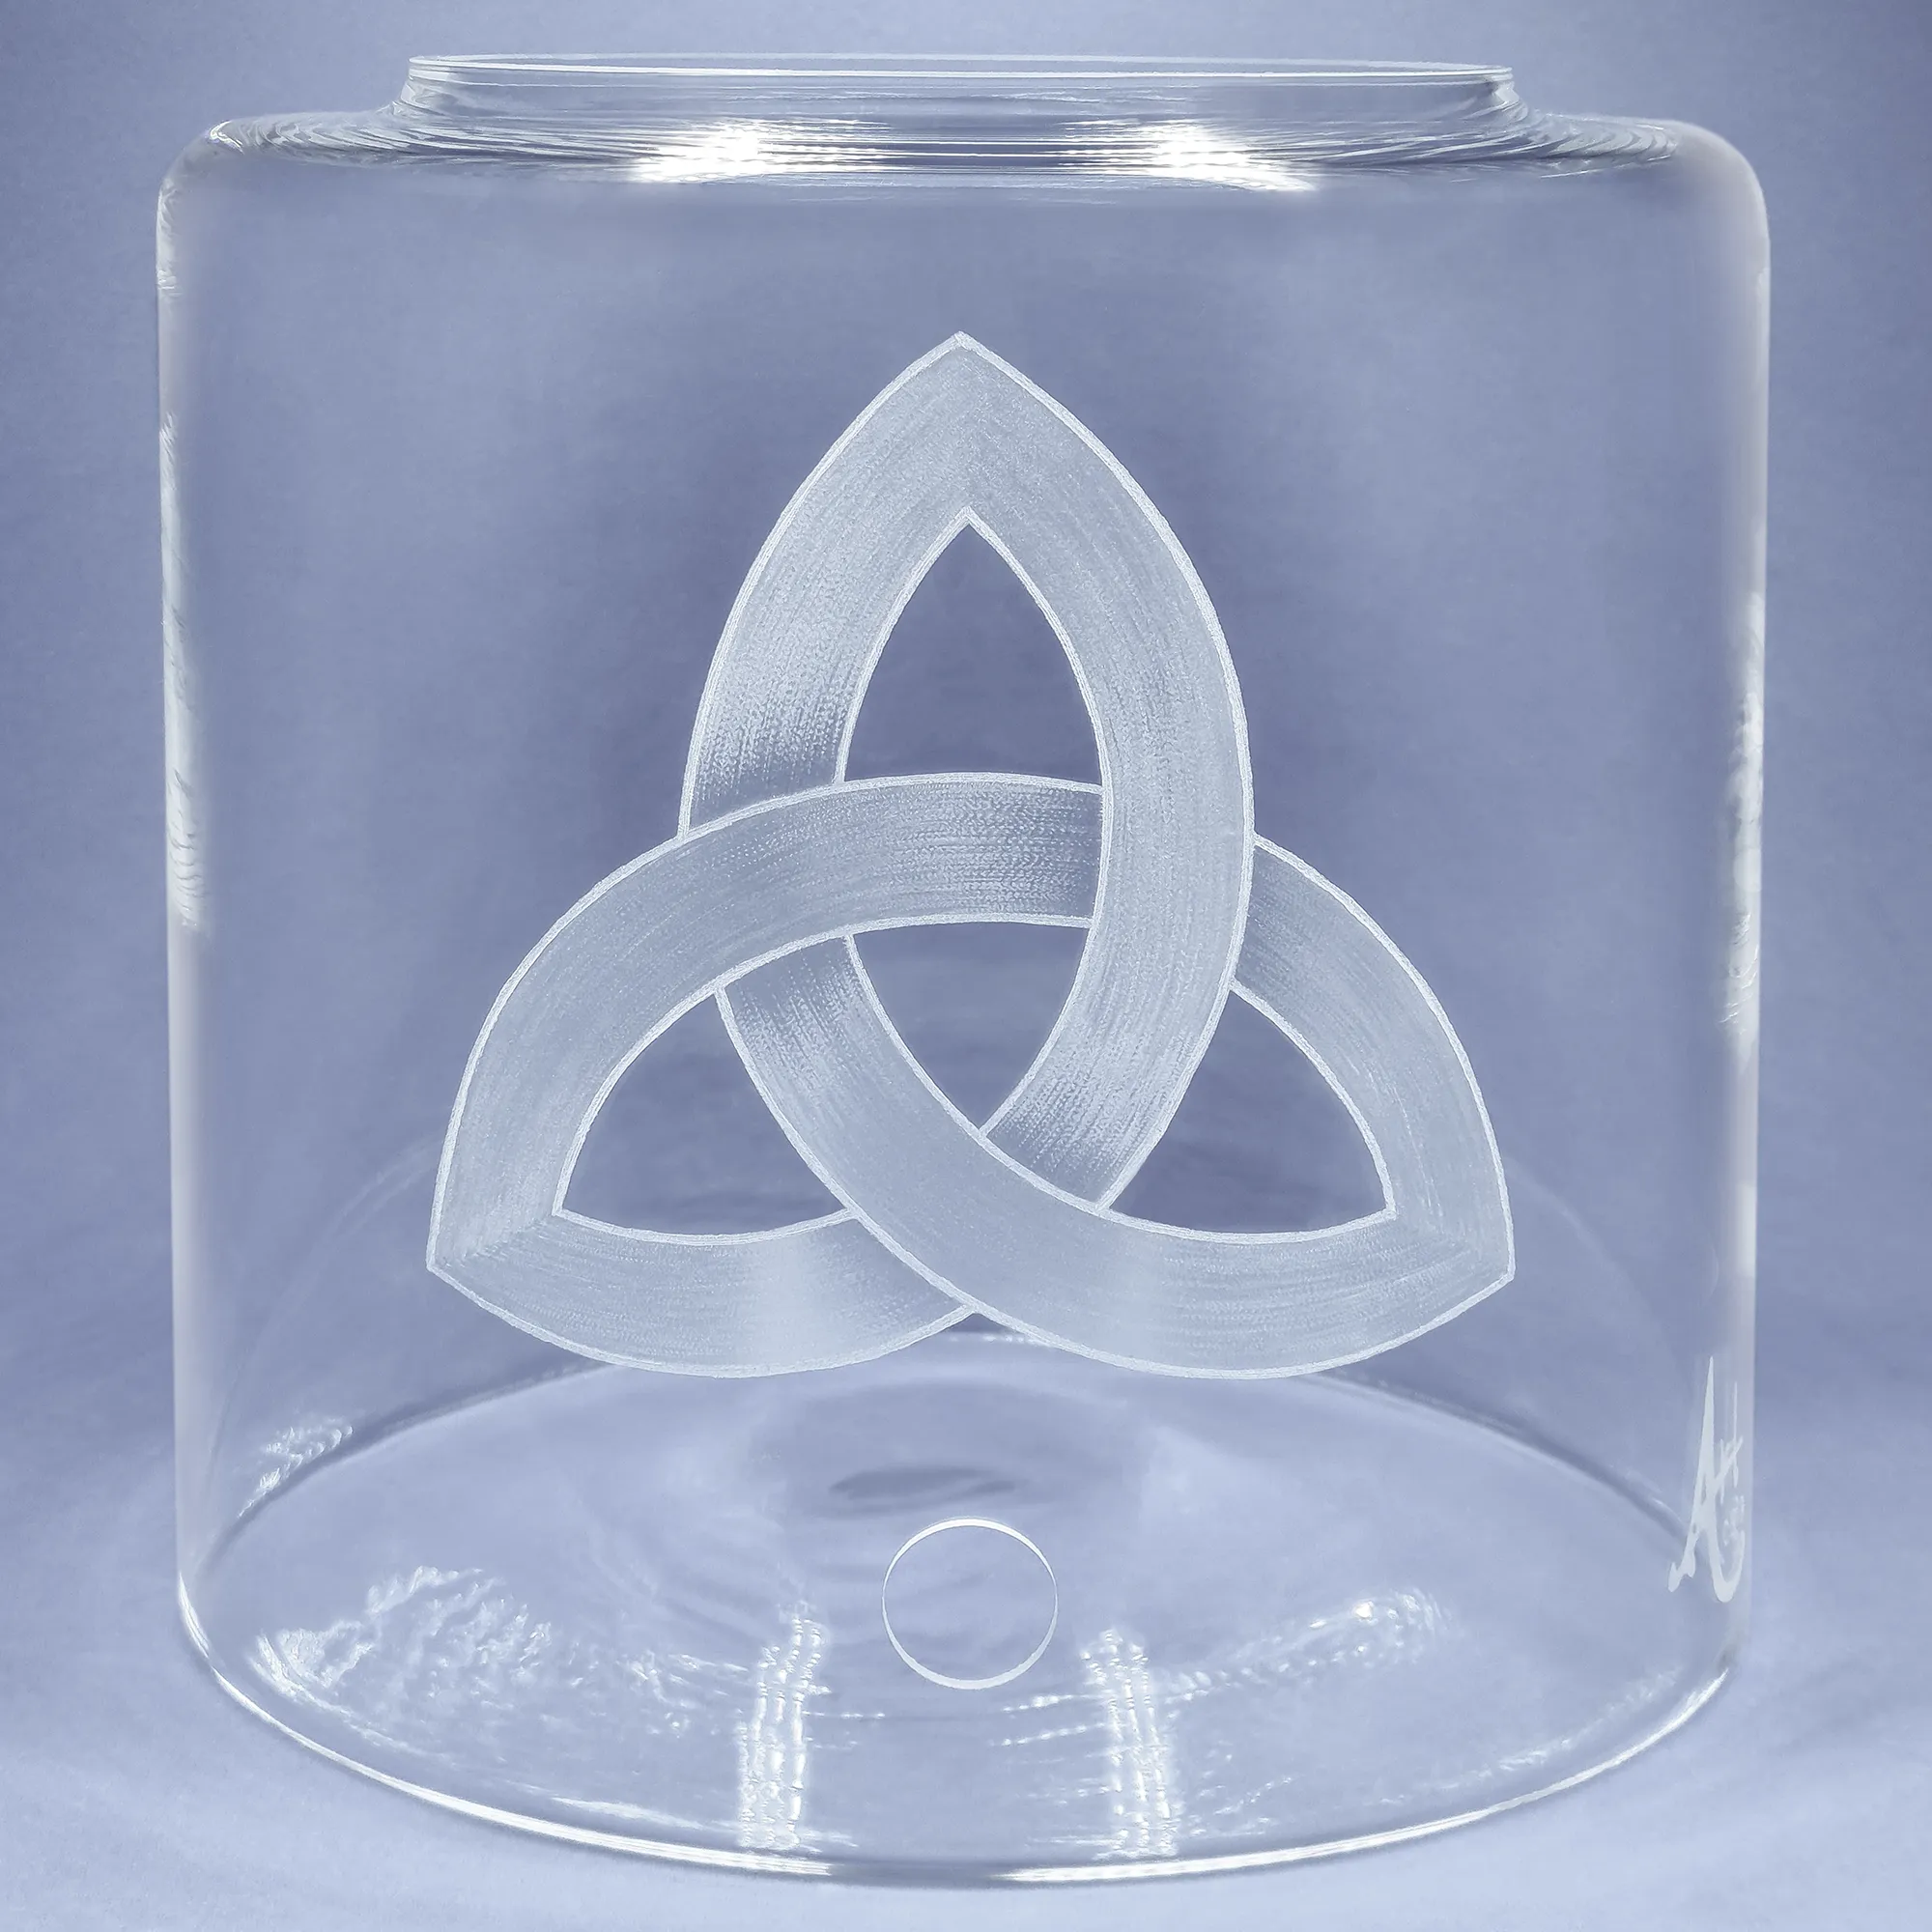 Vorratstank aus Glas für Acala Wasserfilter in klarem Glas mit dem gravierten Zeichen Triquera.